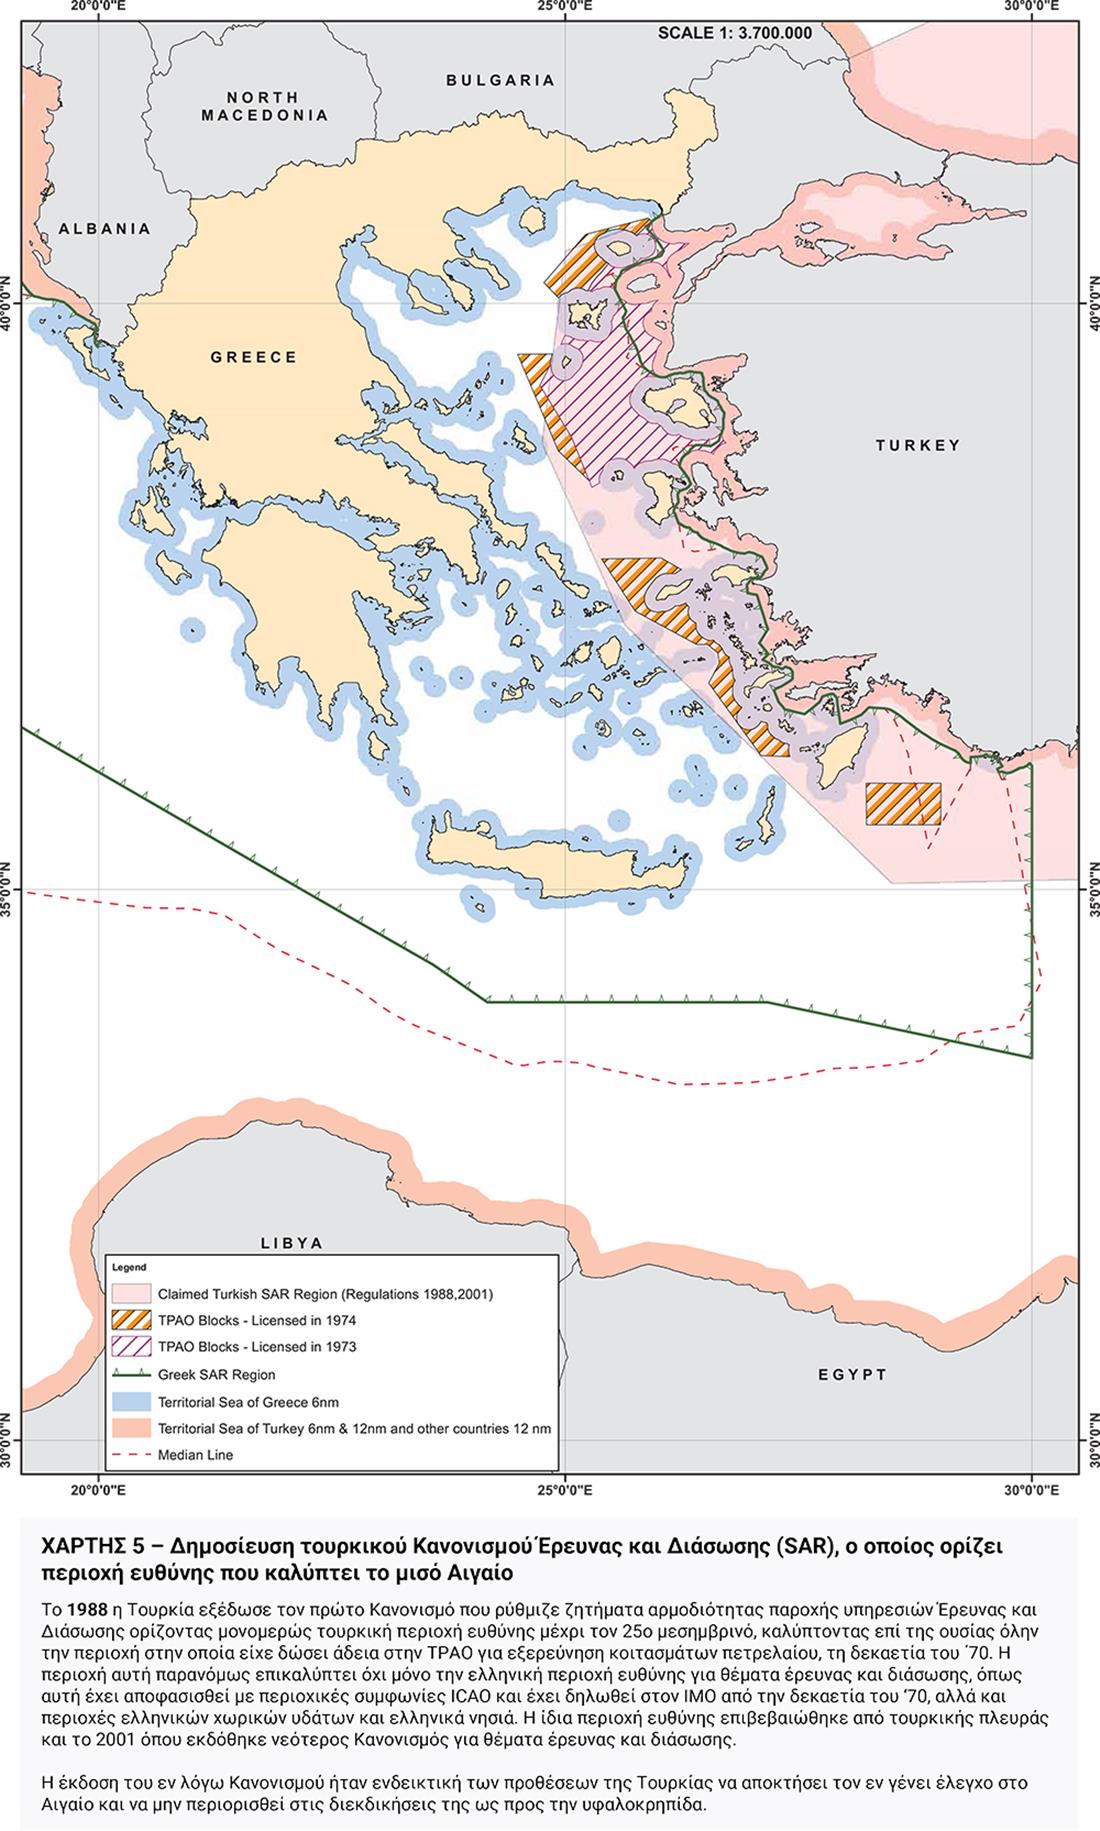 χάρτες - τουρκικός αναθεωρητισμός - Υπουργείο Εξωτερικών - 5